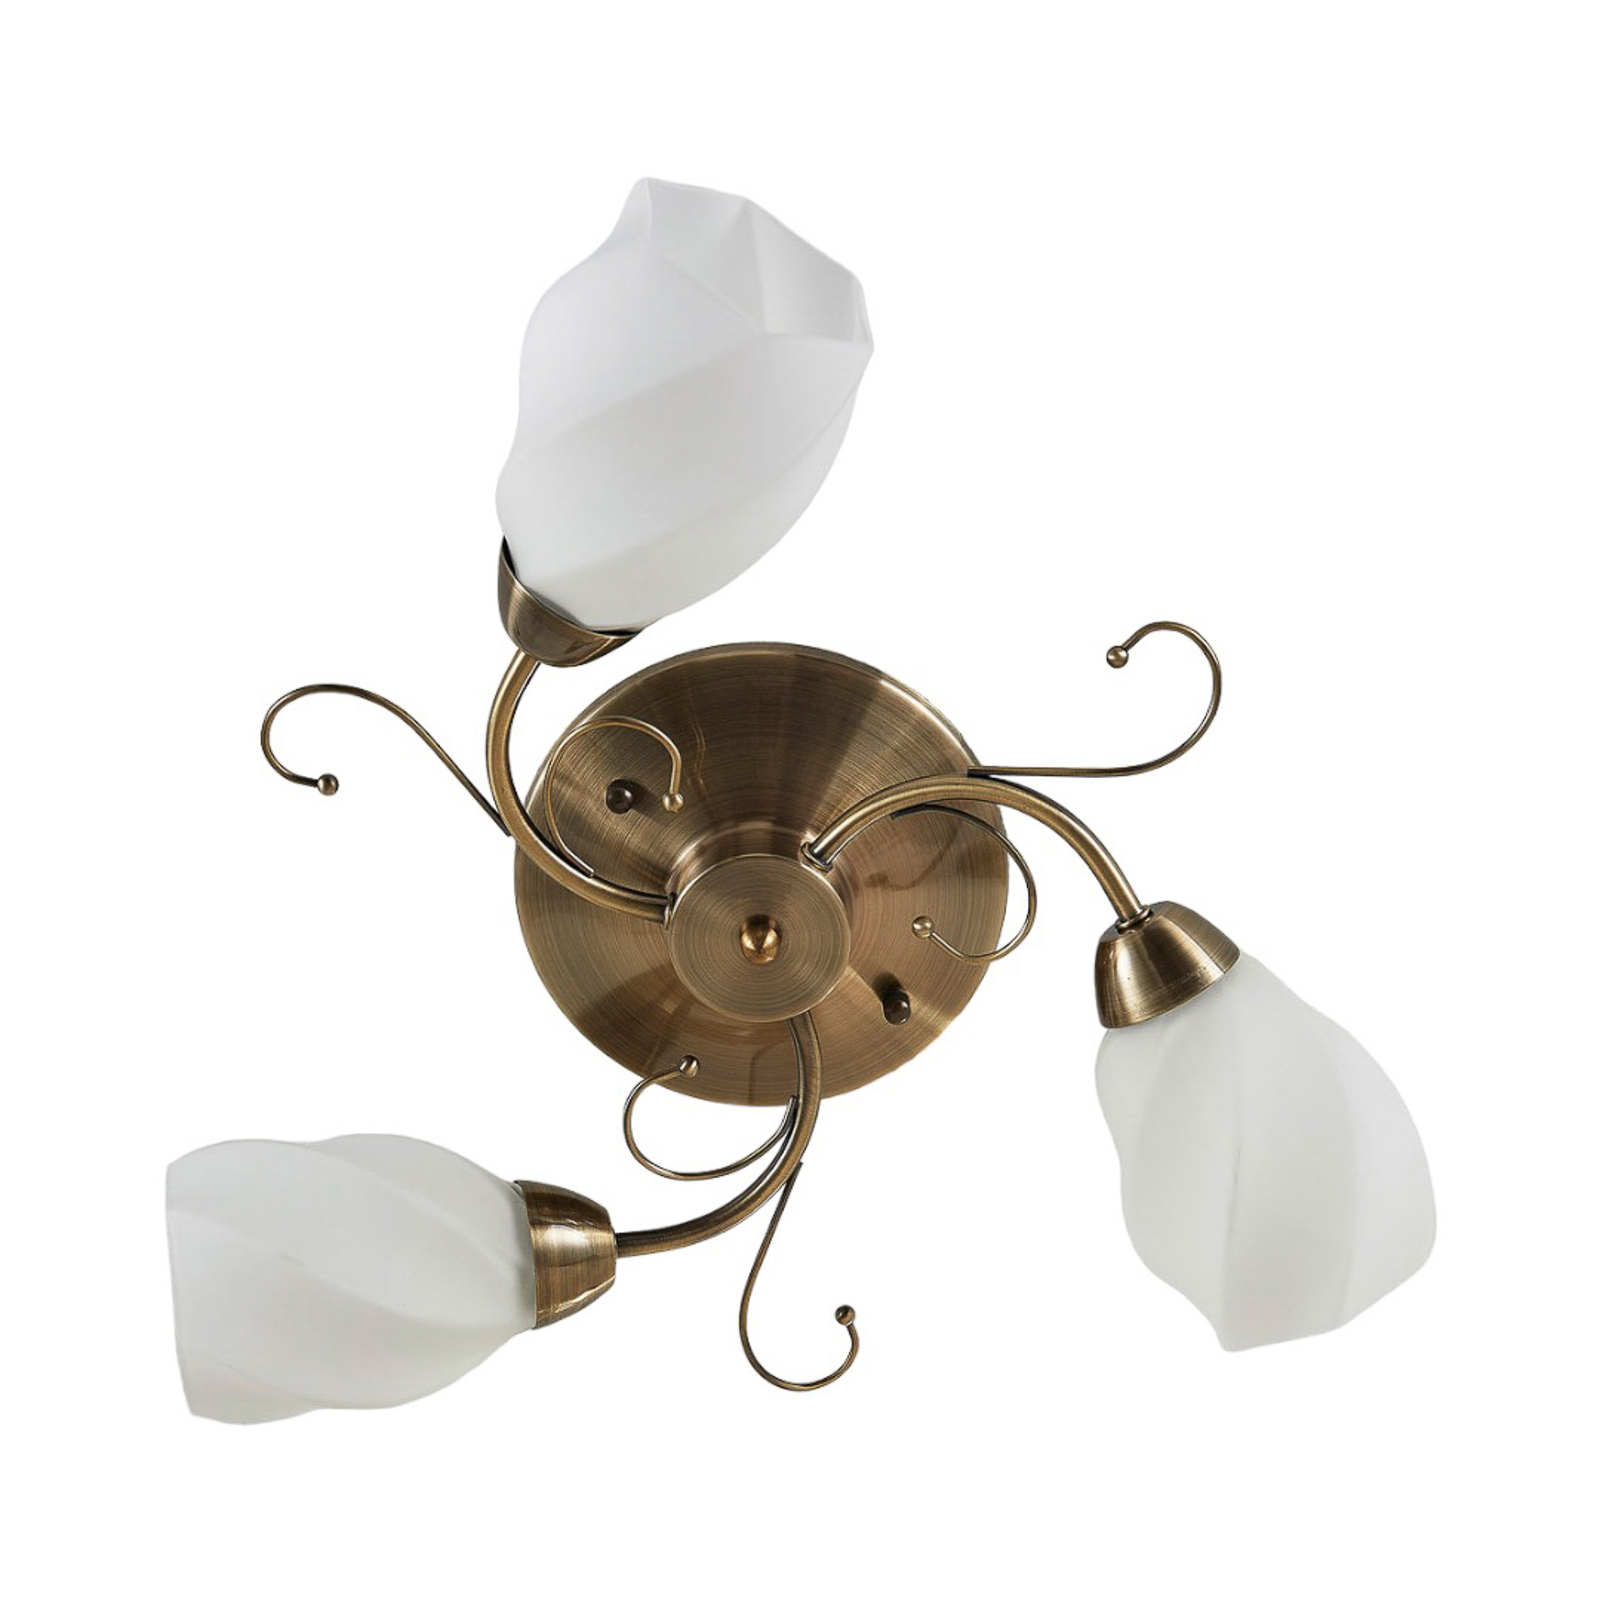 Romantisch gestaltete Deckenlampe Amedea